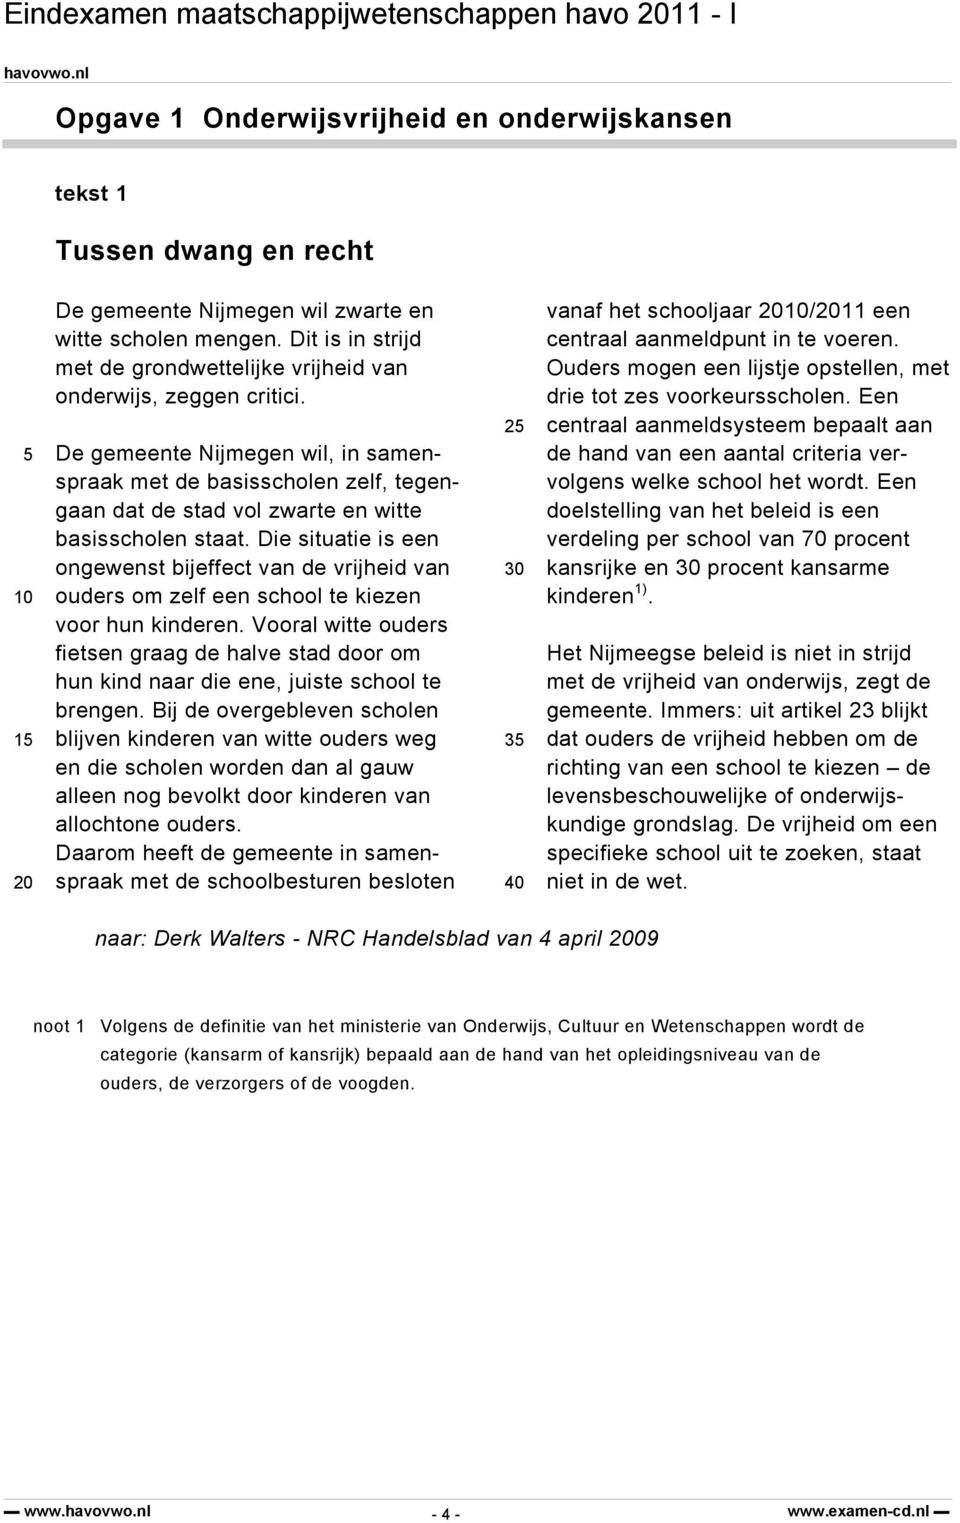 De gemeente Nijmegen wil, in samenspraak met de basisscholen zelf, tegengaan dat de stad vol zwarte en witte basisscholen staat.